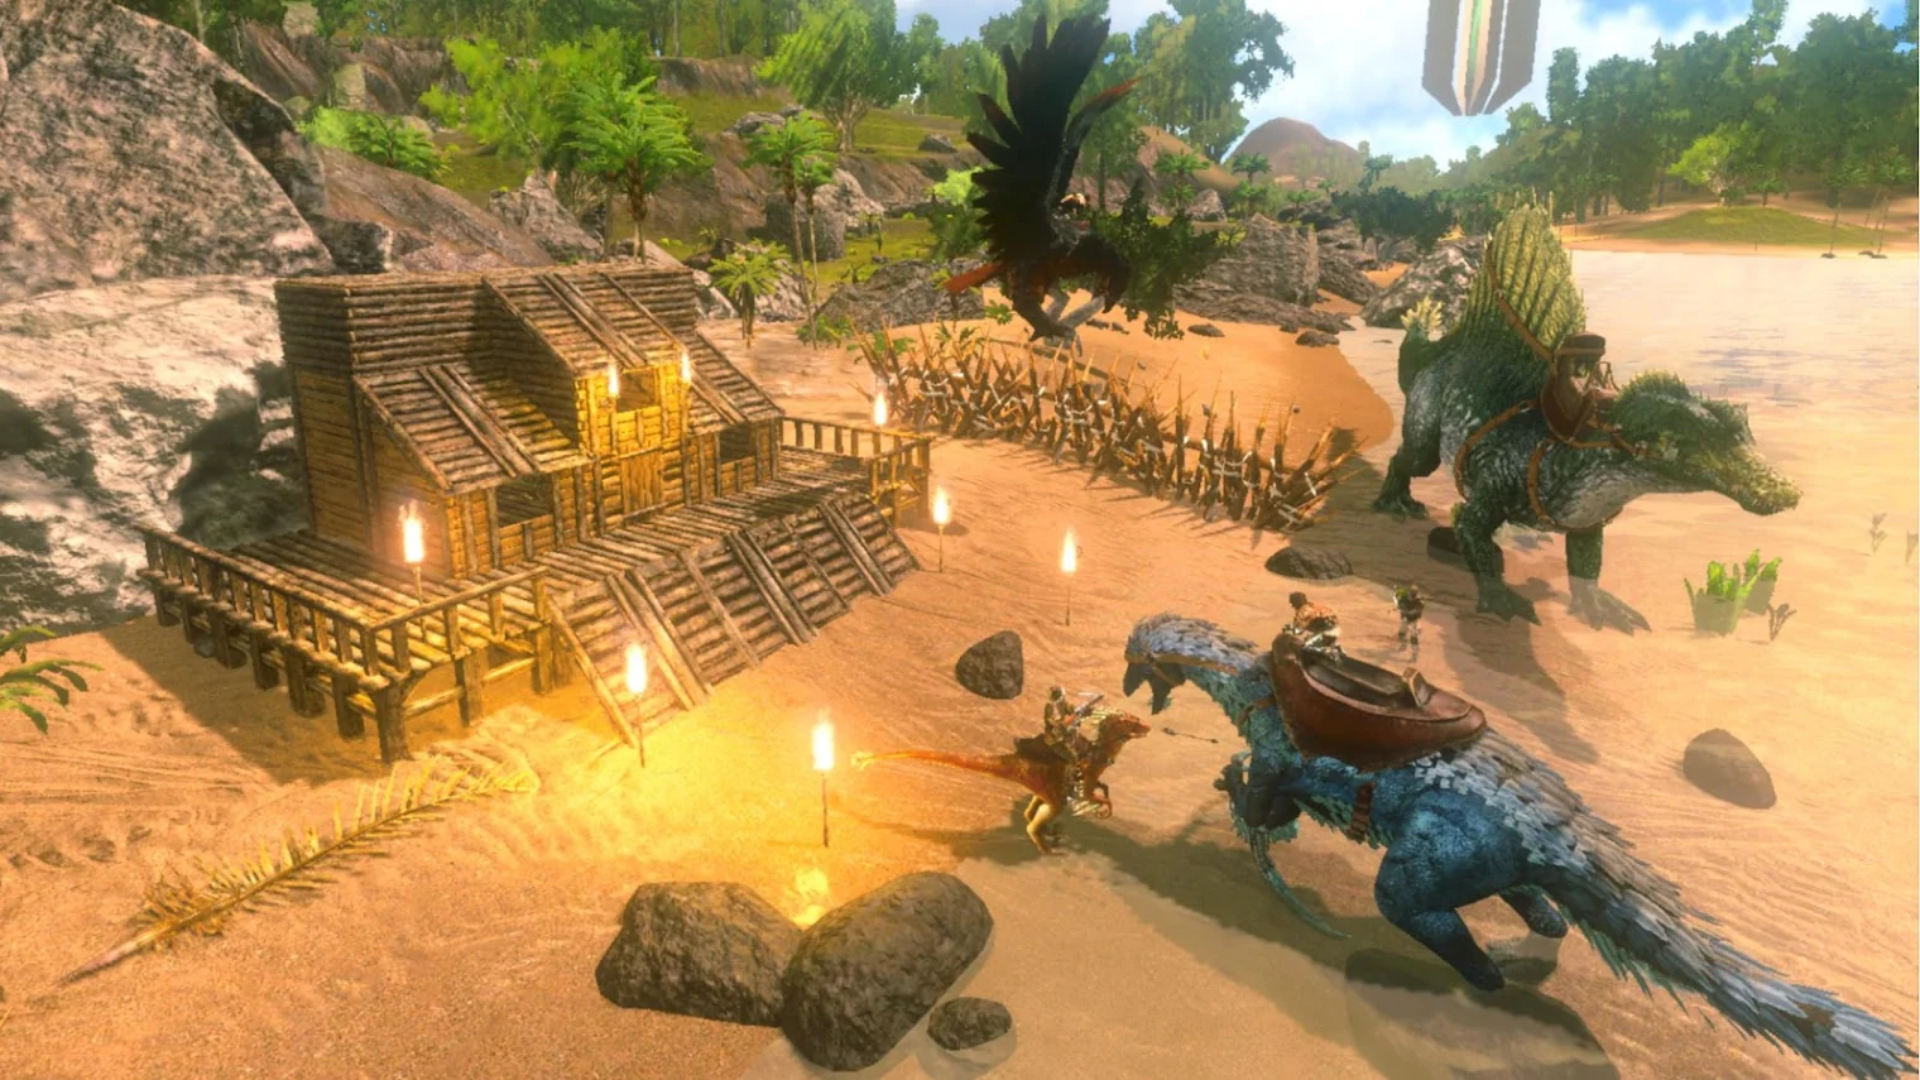 Beste overlevelsesspill på mobil: Ark: Overlevelse utviklet seg. Bildet viser en dinosaur i nærheten av et hus under bygging